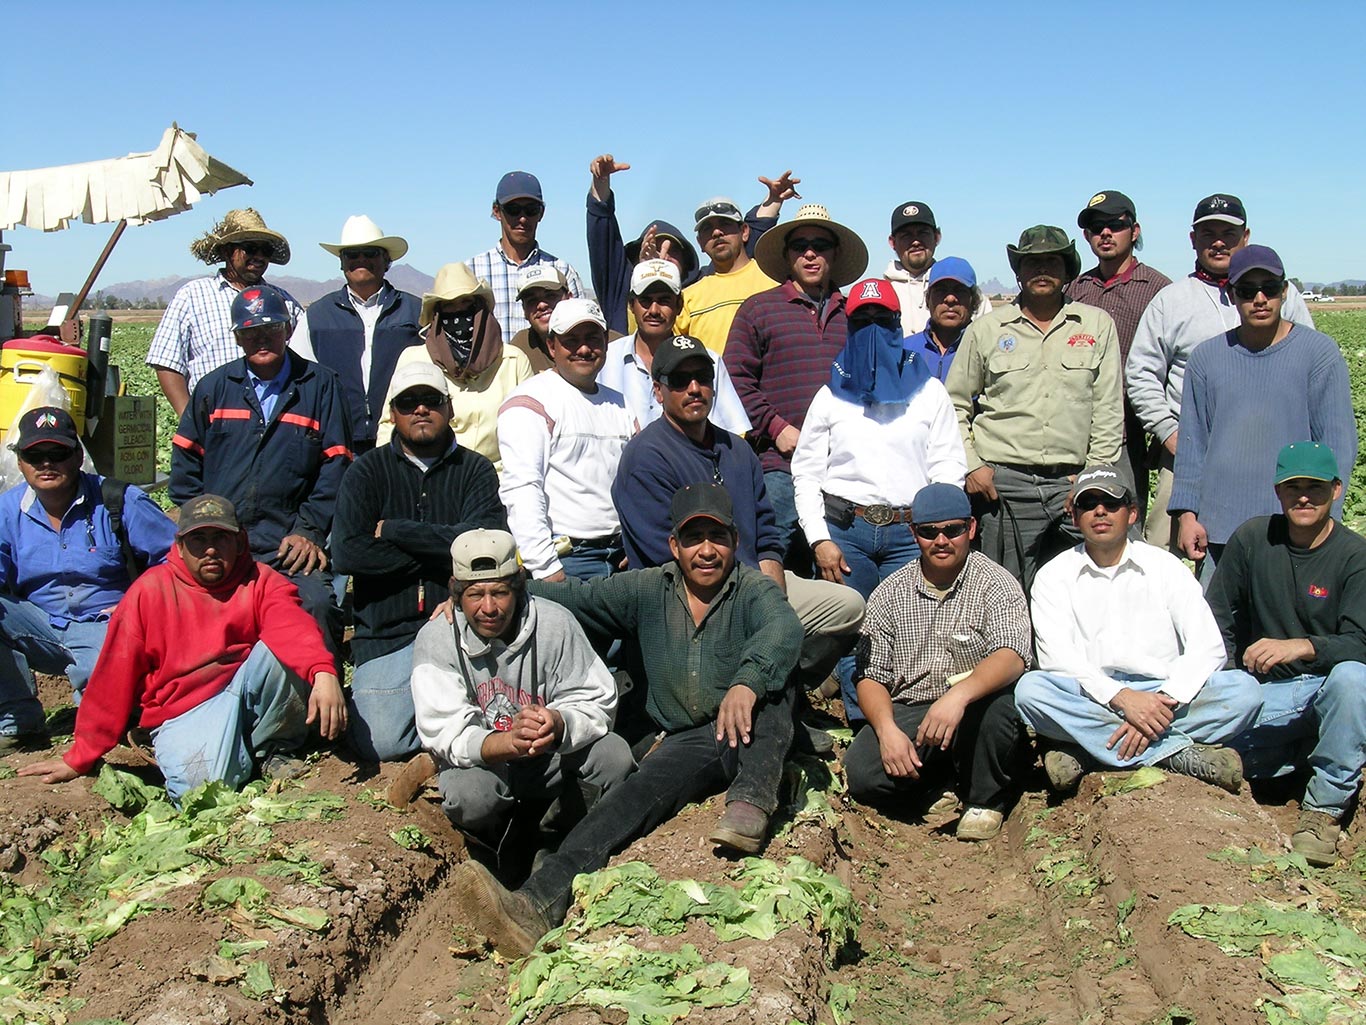 Coletores de alface em Yuma, Arizona